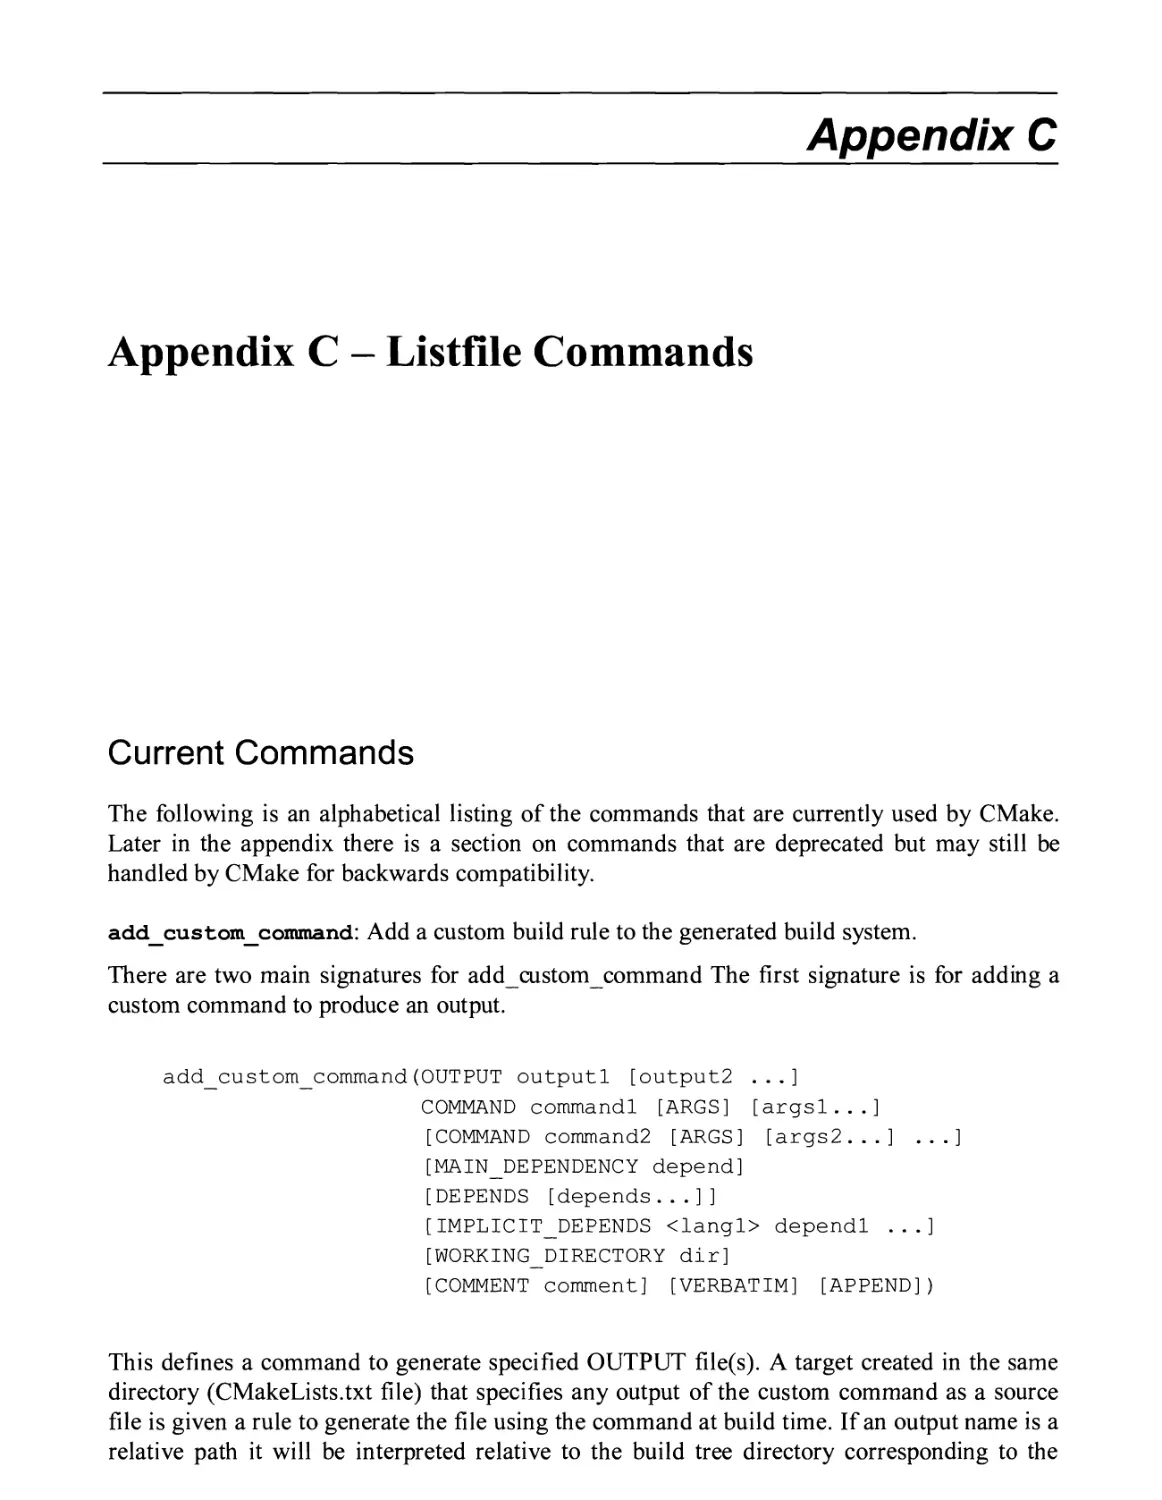 APPENDIX C - LISTFILE COMMANDS